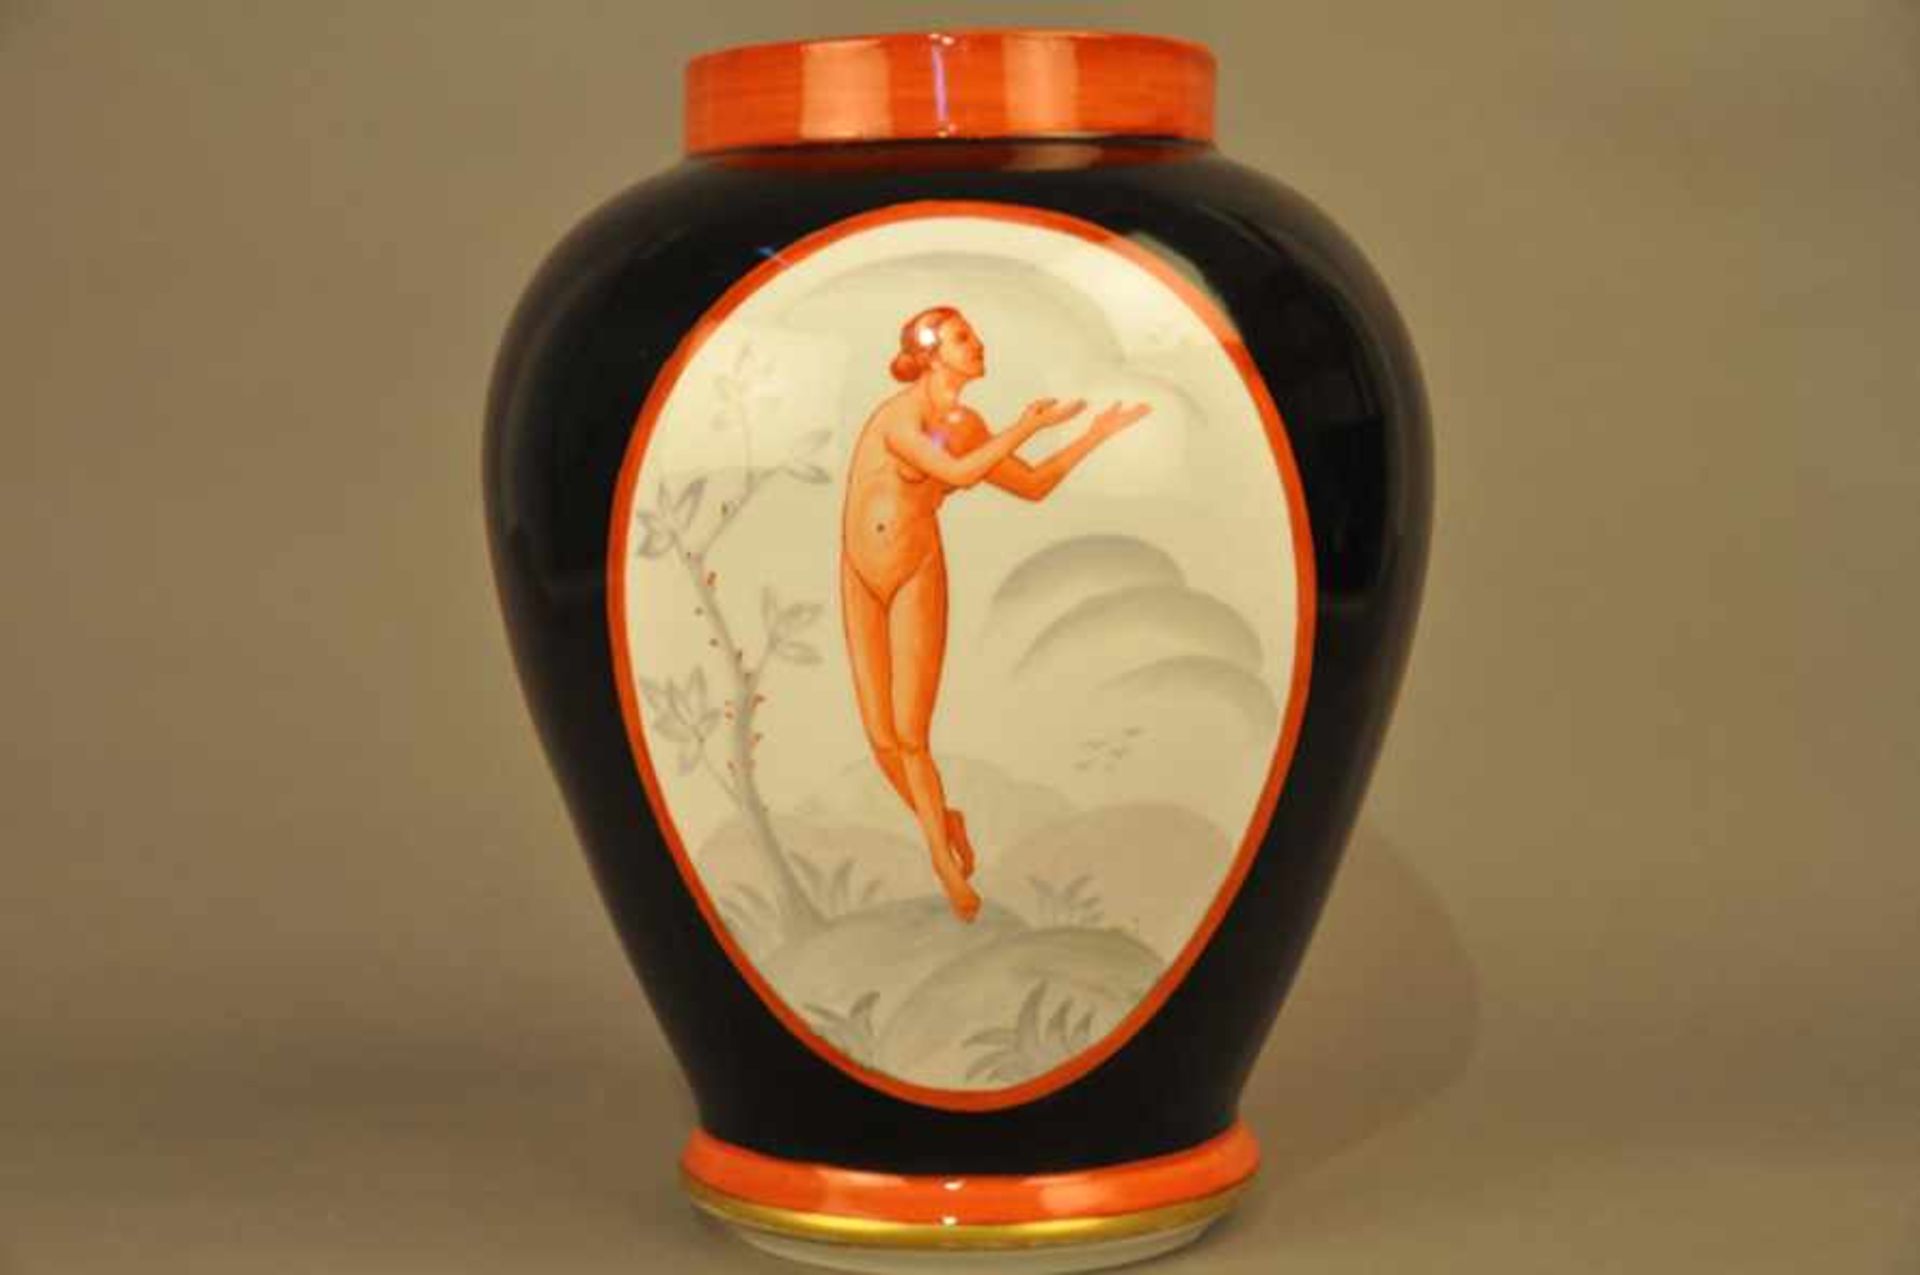 Bauchige Vase, Jugendstil / Art Deco.Schwarzer Fond, 2 Kartuschen mit weiblichen Akten in Rot, - Image 2 of 7